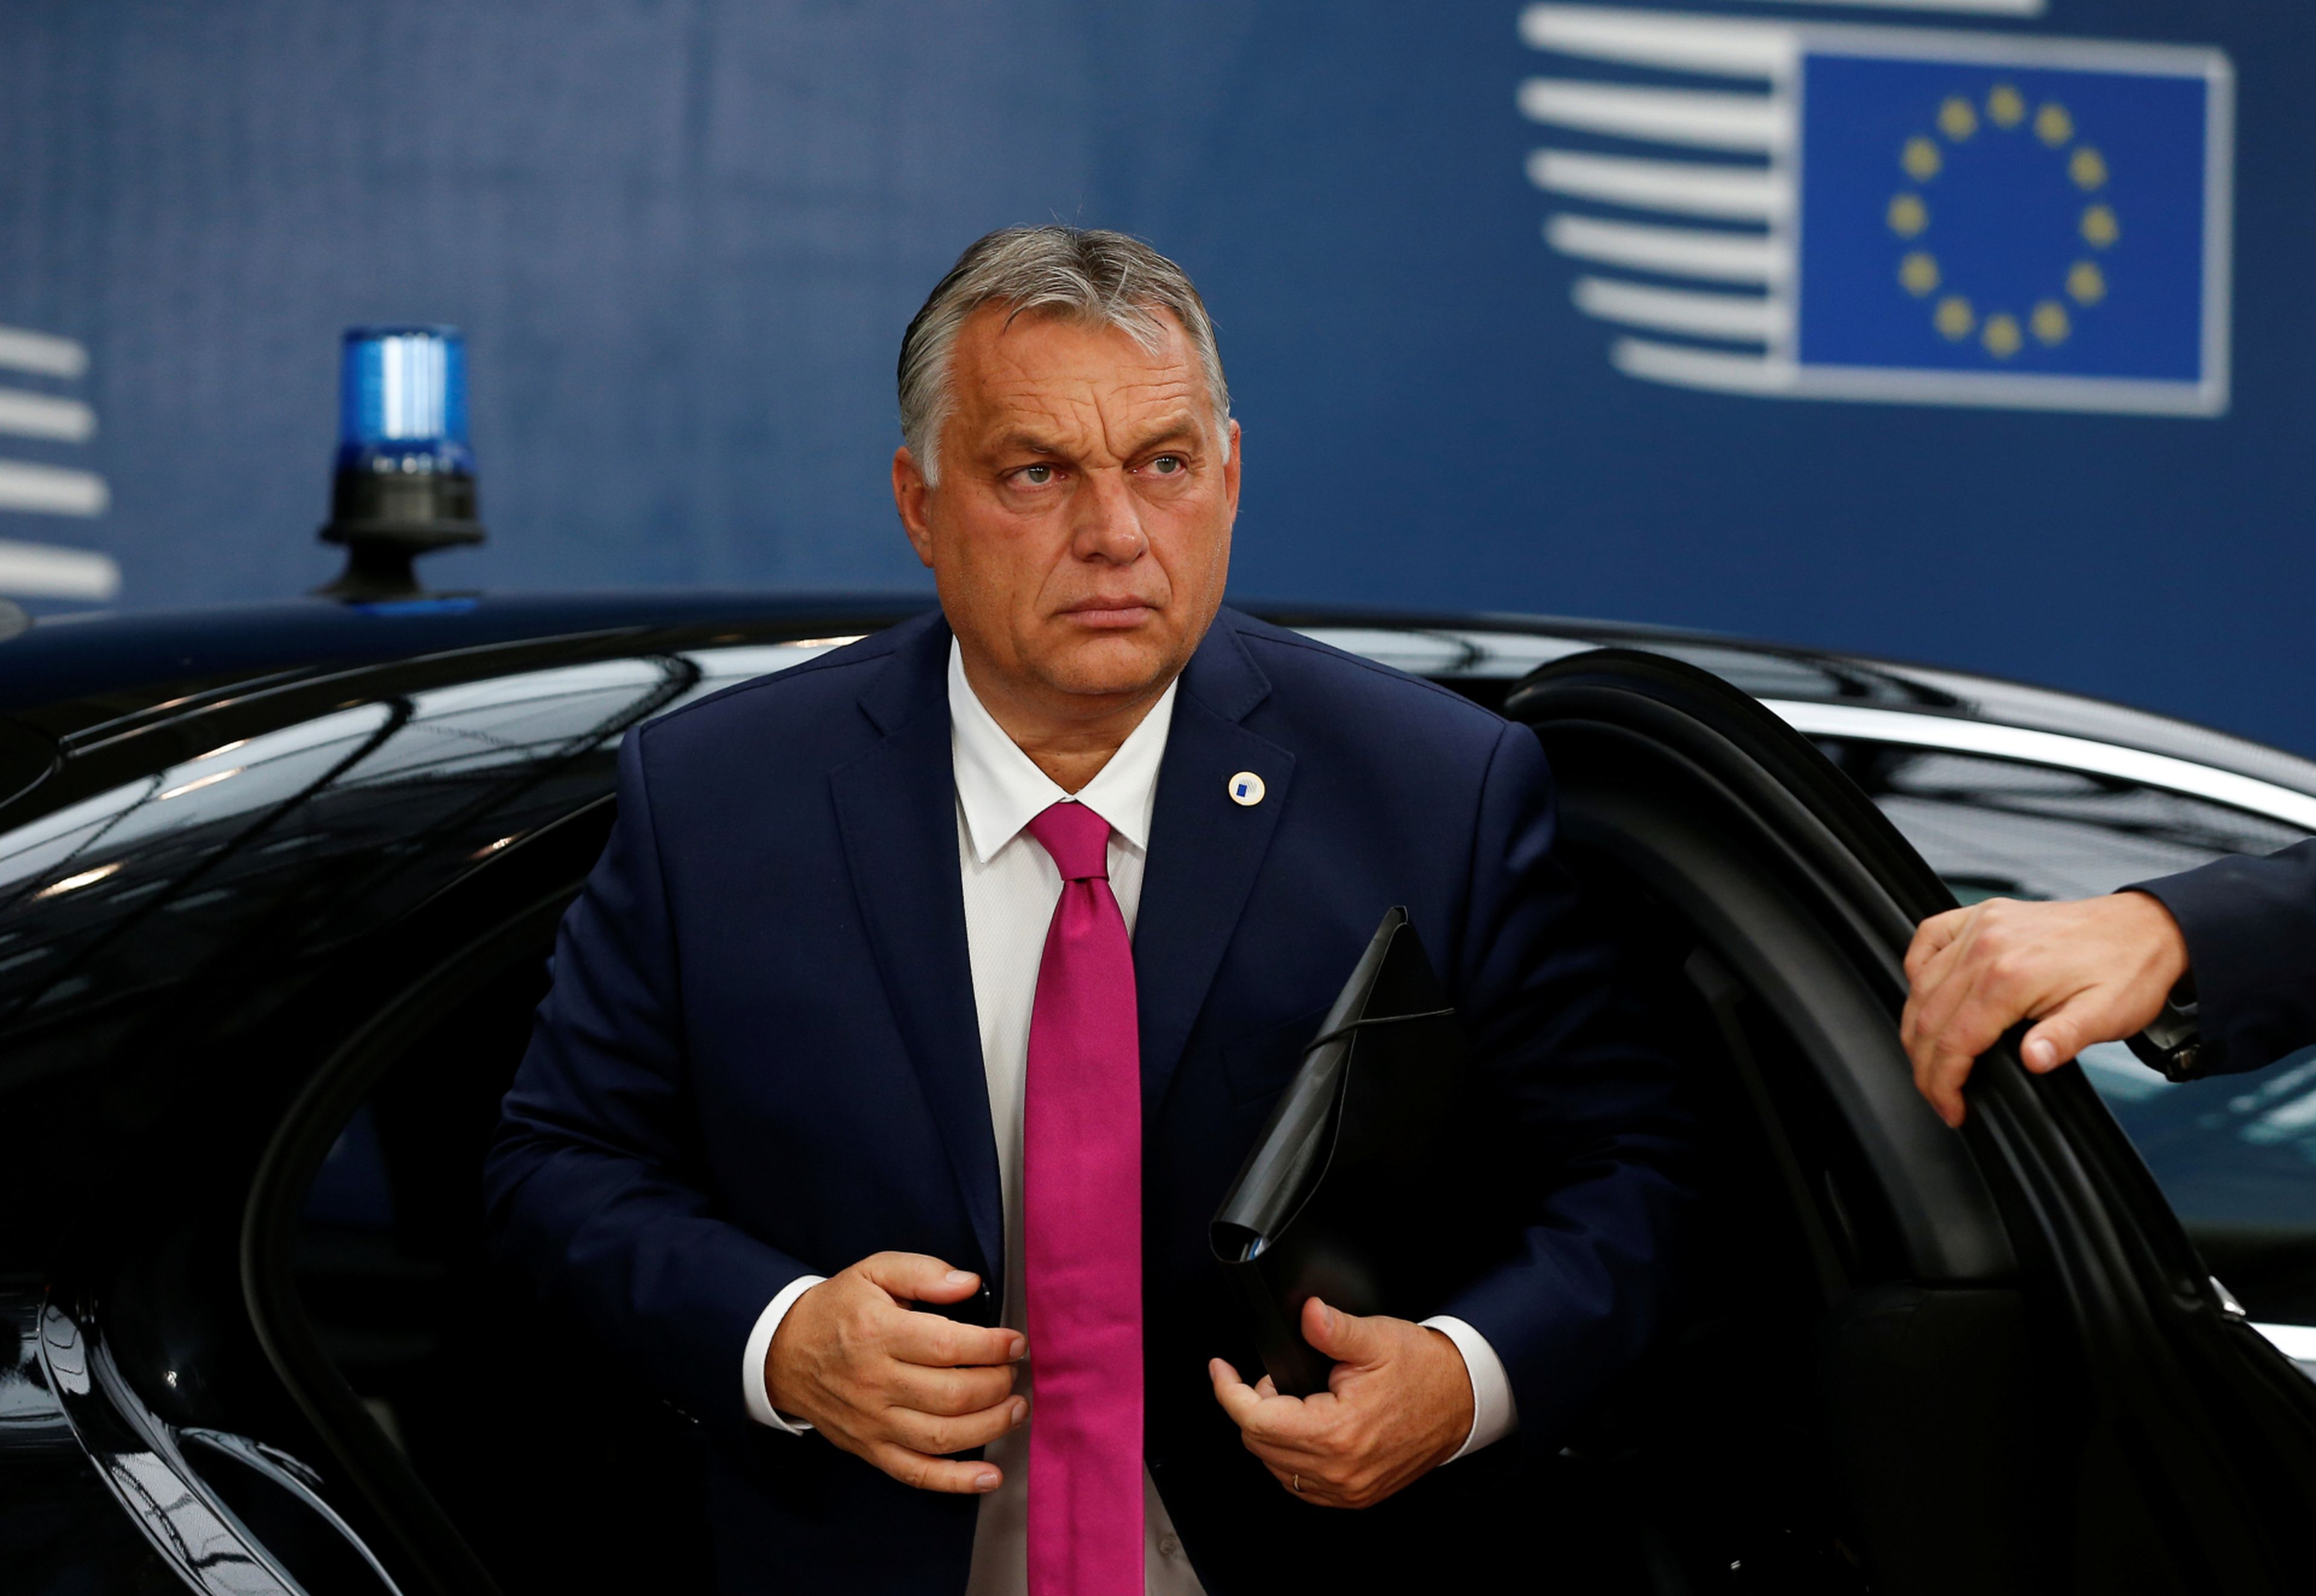 El primer ministro húngaro, Viktor Orbán.